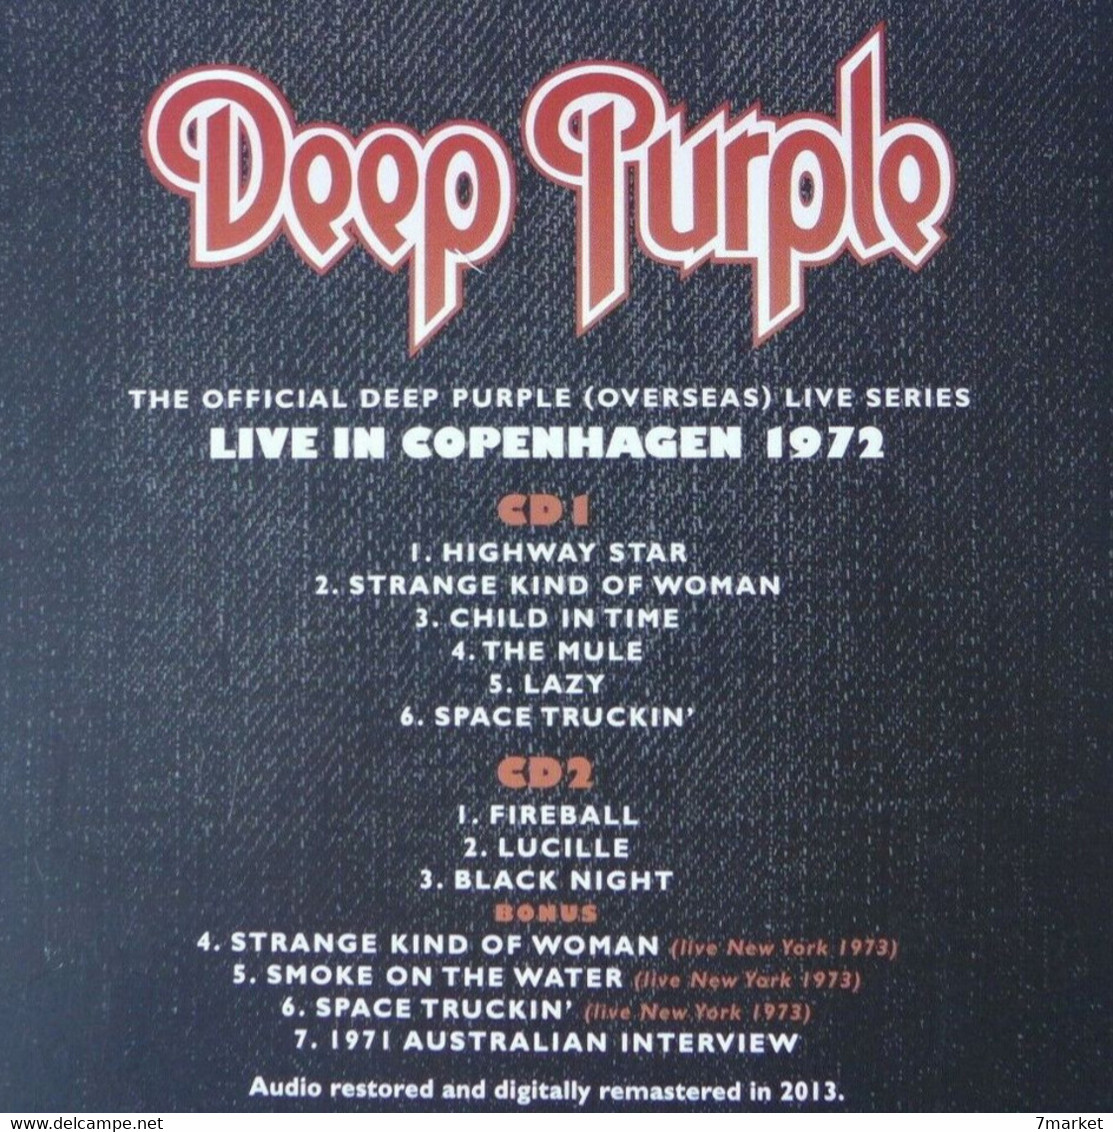 CD/  Deep Purple - Copenhagen 1972 Live / Label Edel - 2013; 2 CD - Hard Rock & Metal